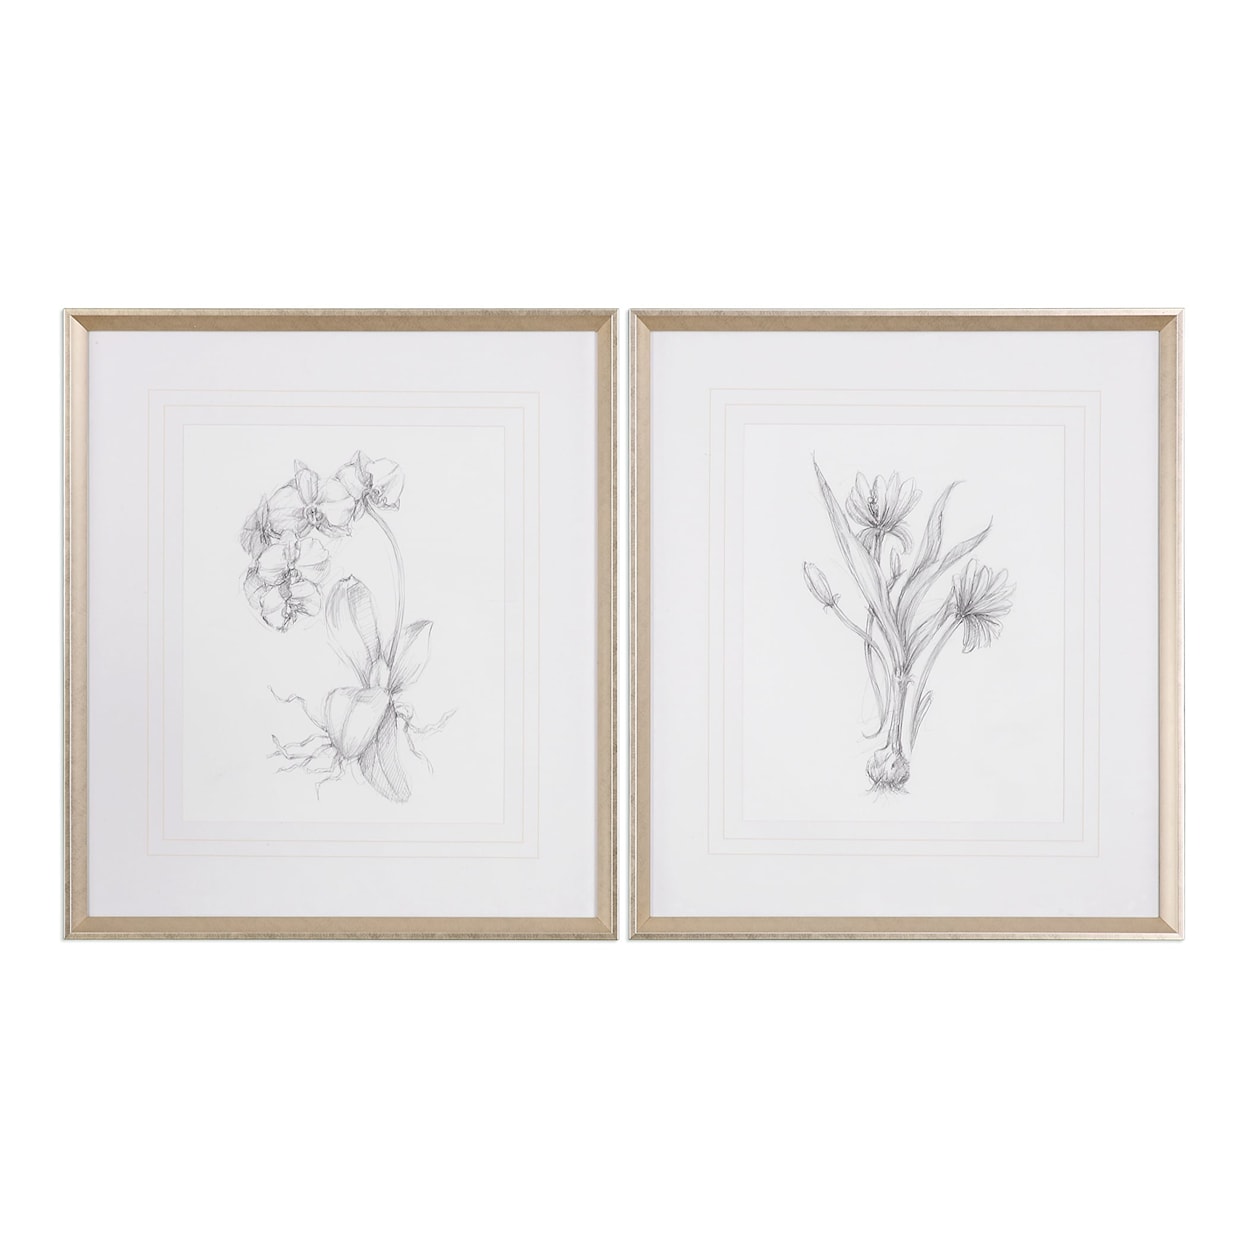 Uttermost Framed Prints Botanical Sketches (Set of 2)